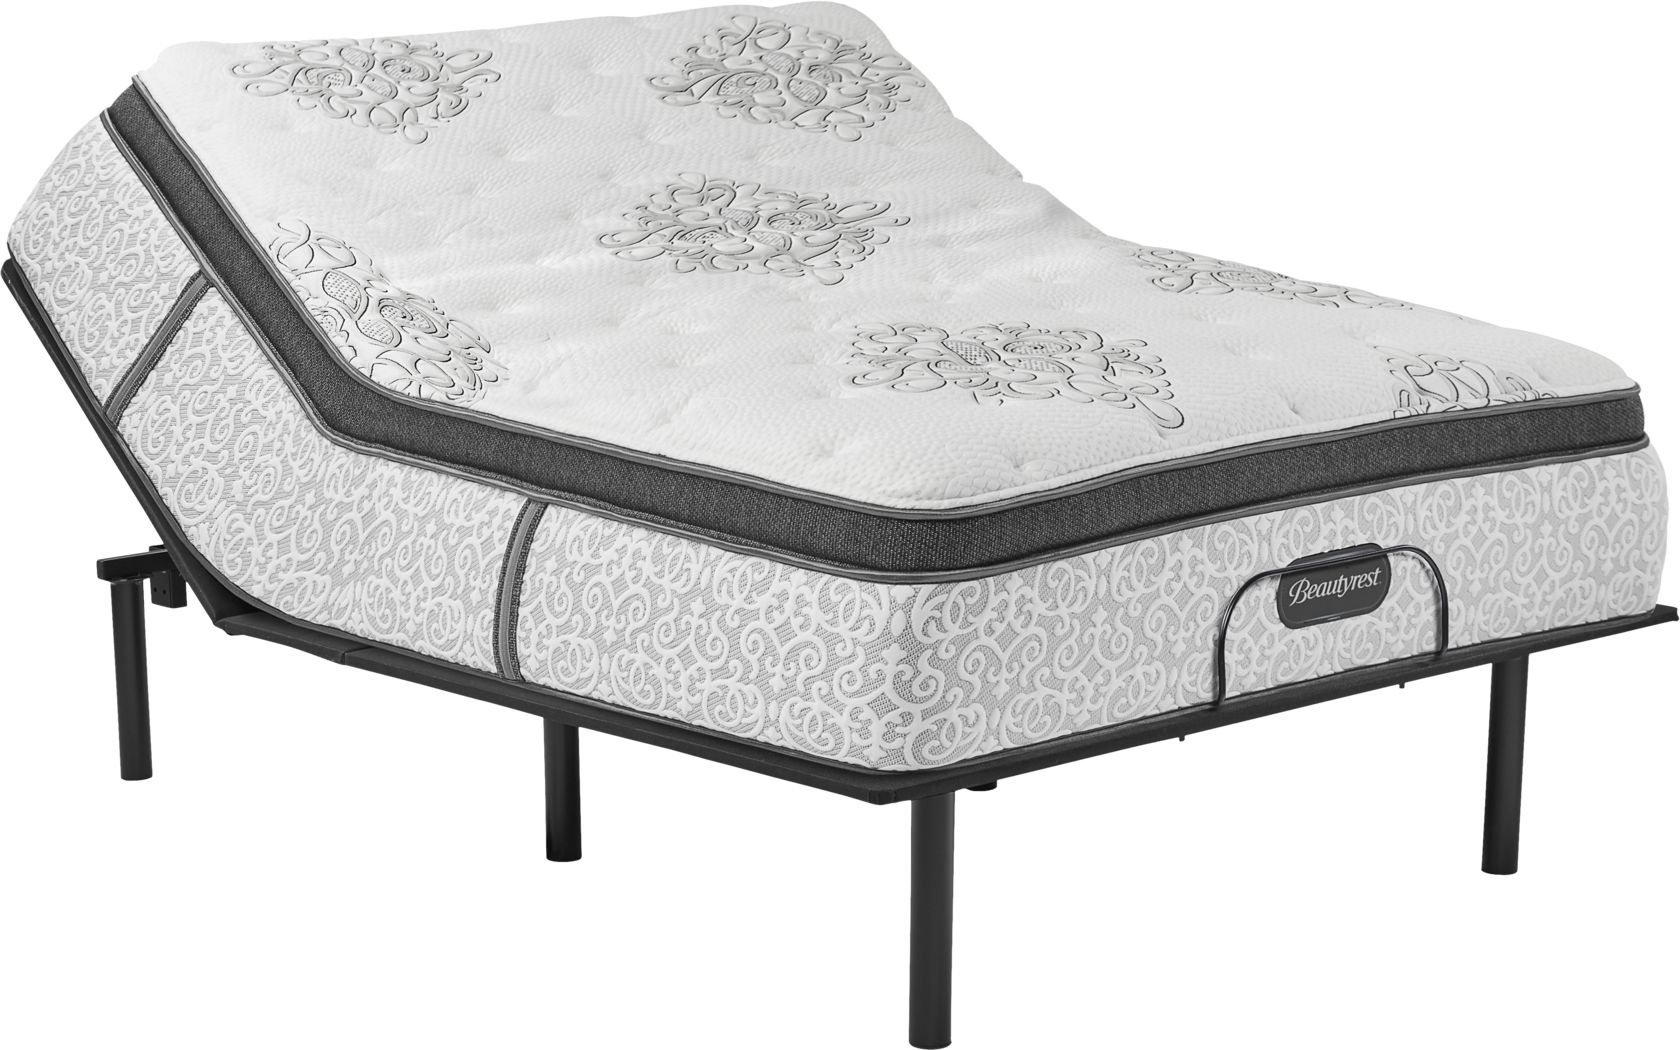 beautyrest legend bradford queen mattress